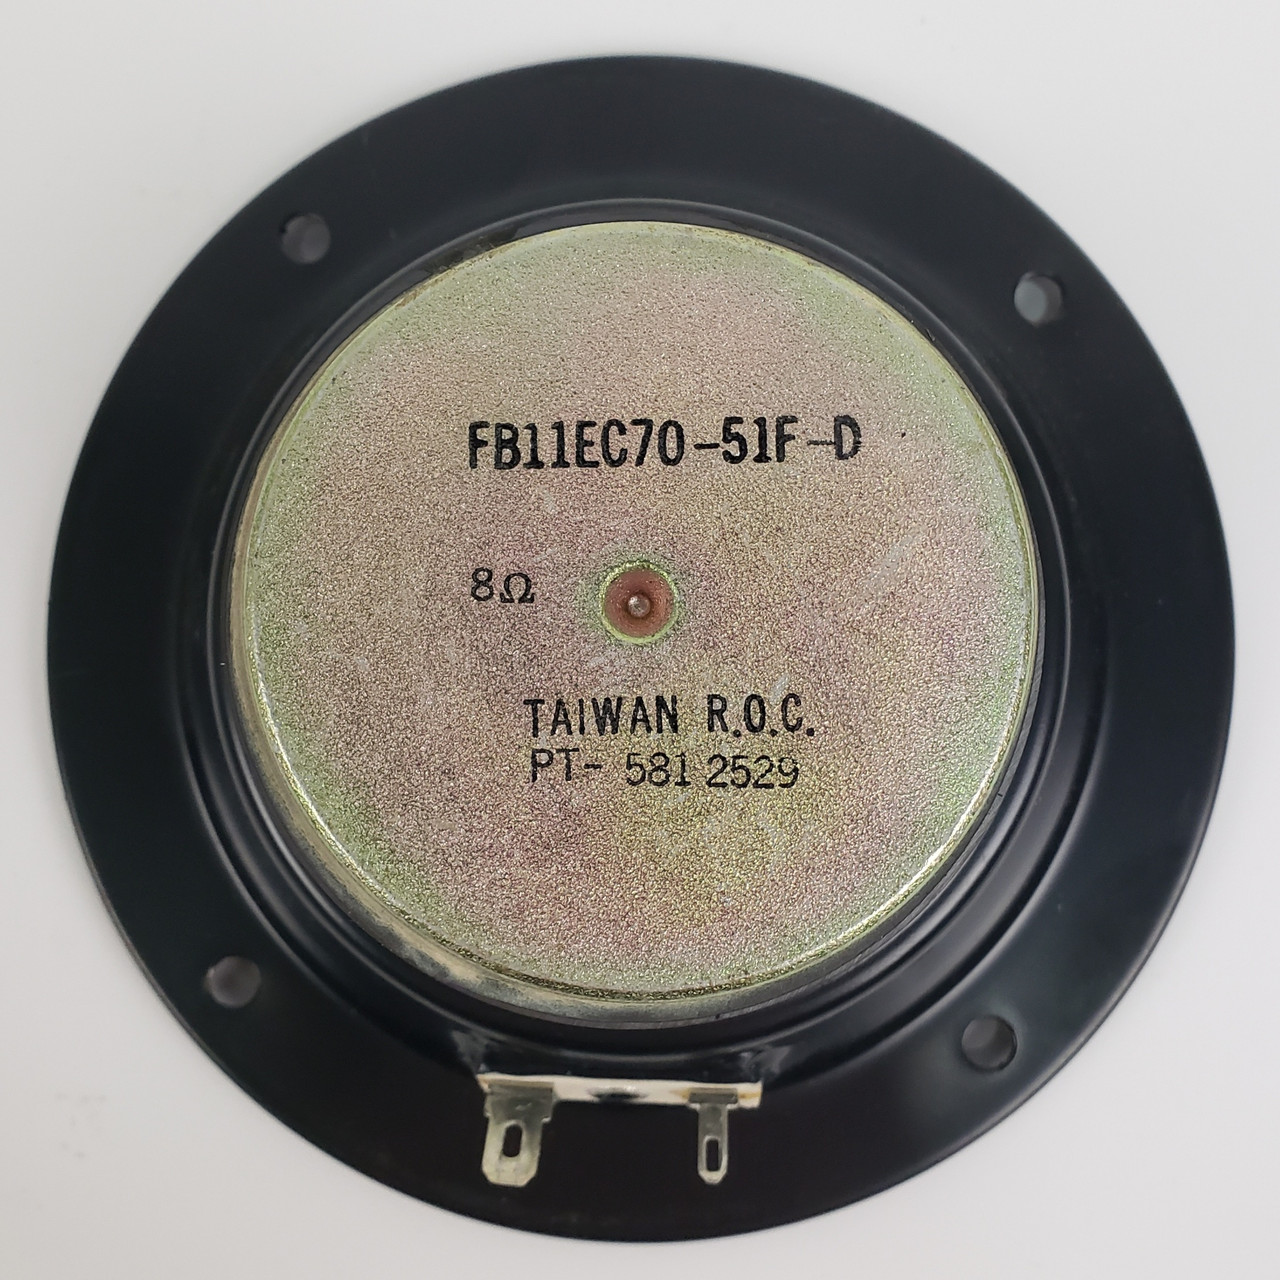 RCA FB11EC70-51F-D Mid-Range Speaker Driver | Grade B